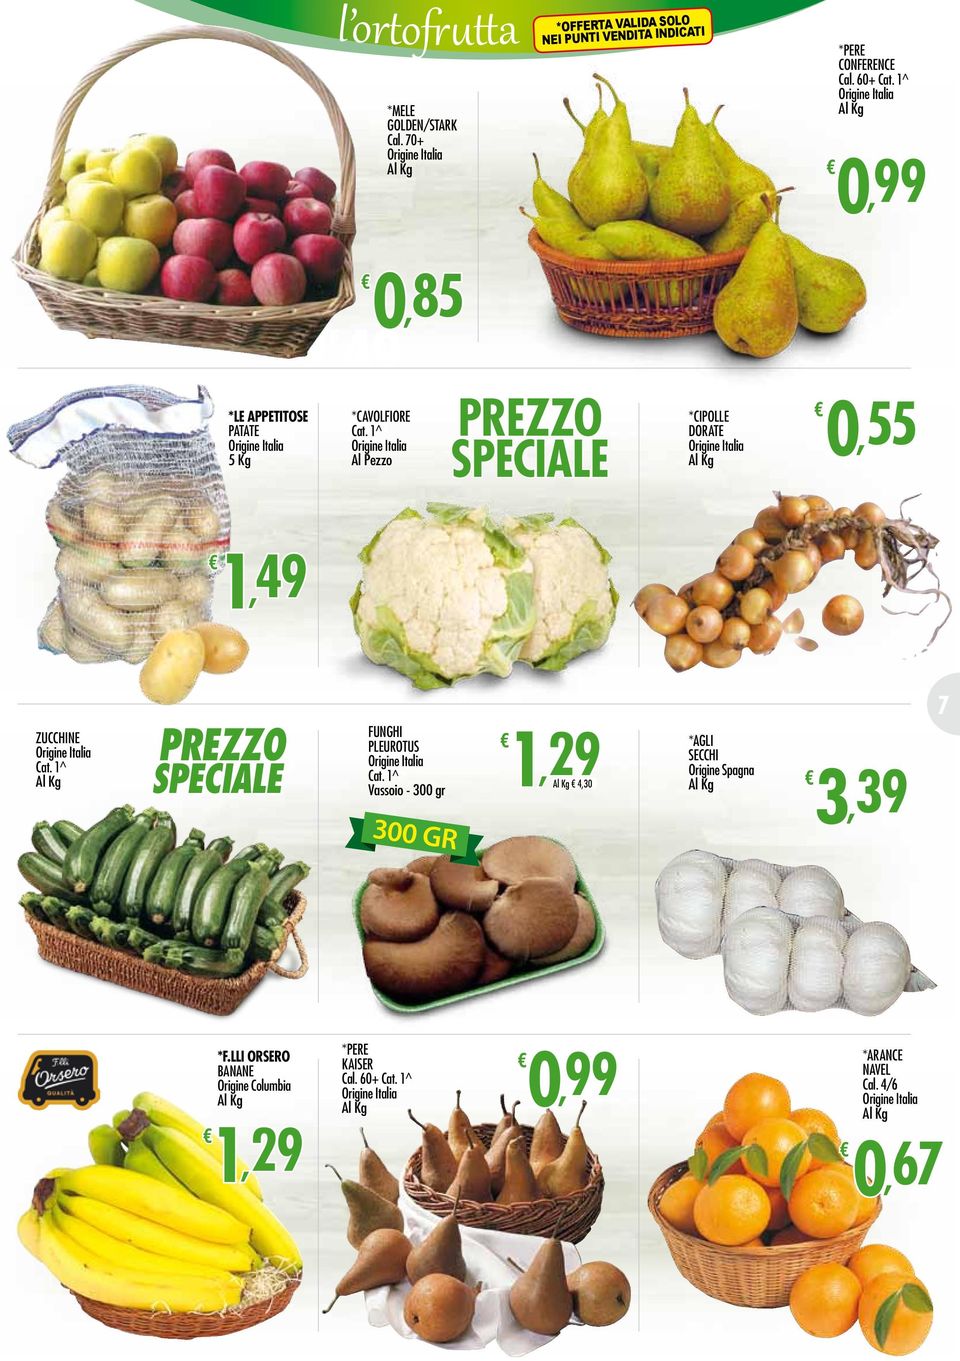 1^ Origine Italia Al Pezzo PREZZO SPECIALE 0,55 *CIPOLLE DORATE Origine Italia 1,49 zucchine Origine Italia Cat.